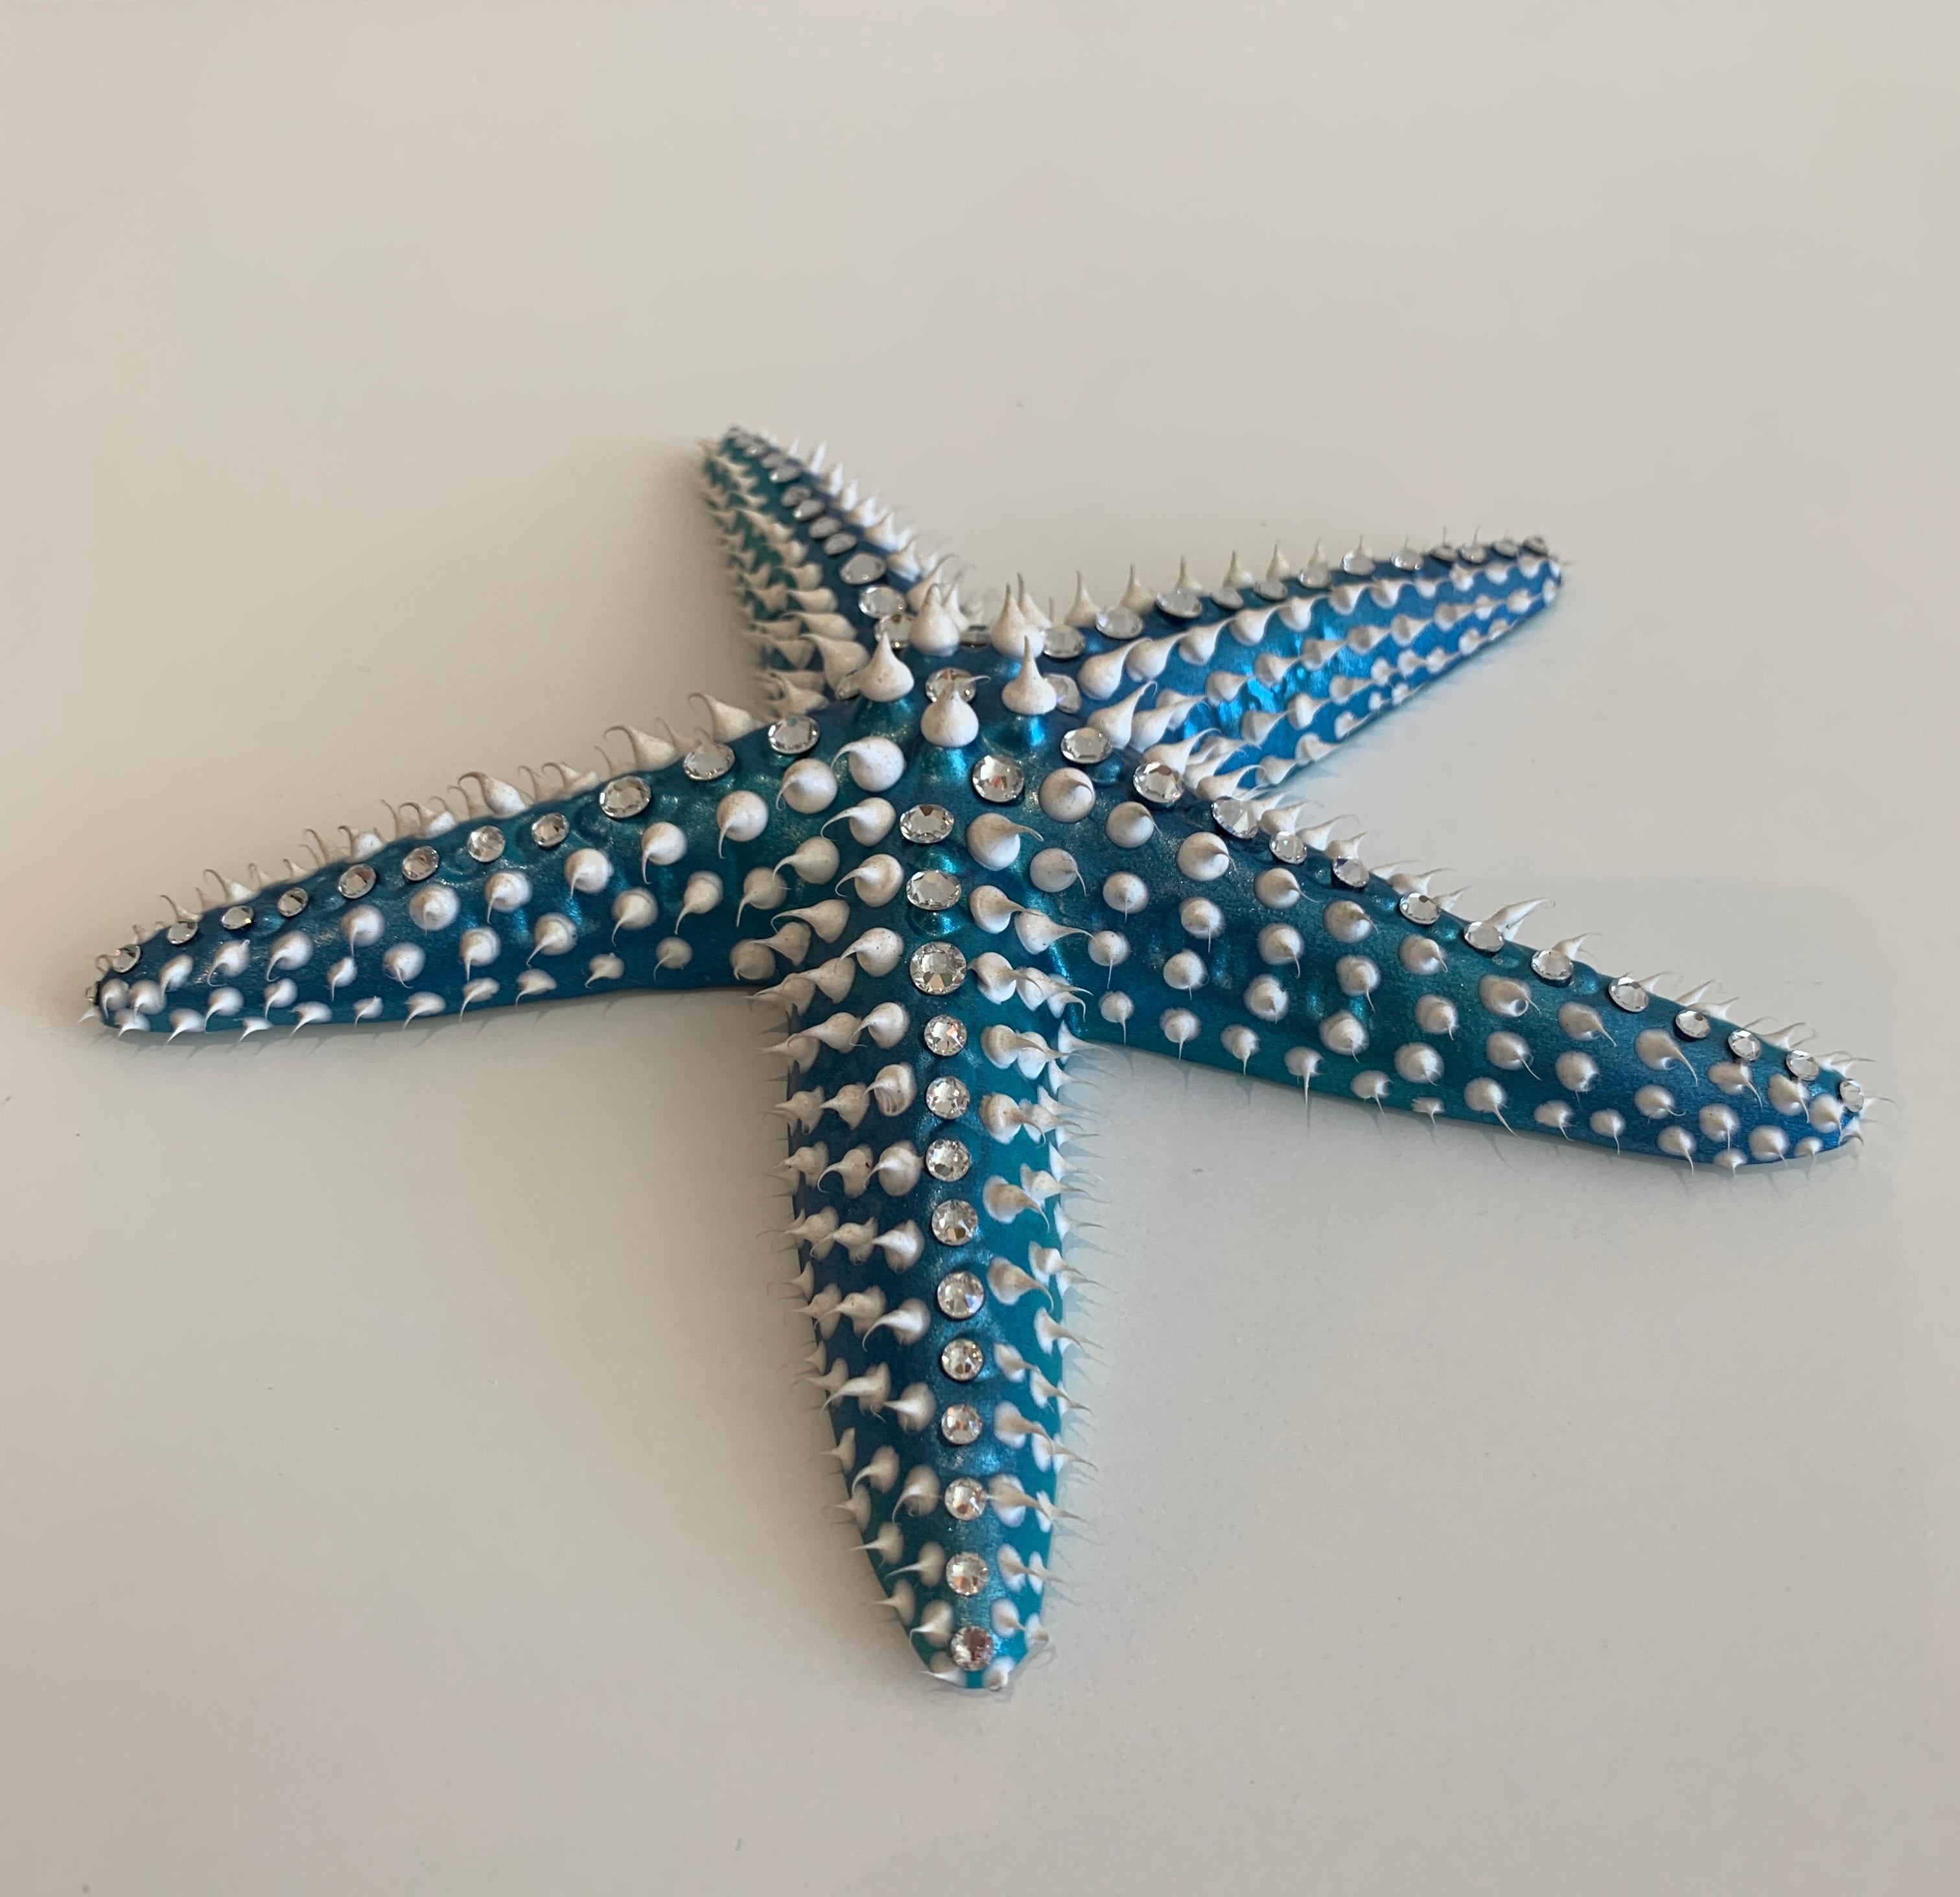 Eddy Maniez Figurative Sculpture - Eddie Maniez "Starfish Large" Sculpture French Ceramic Silicone Blue Swarovski